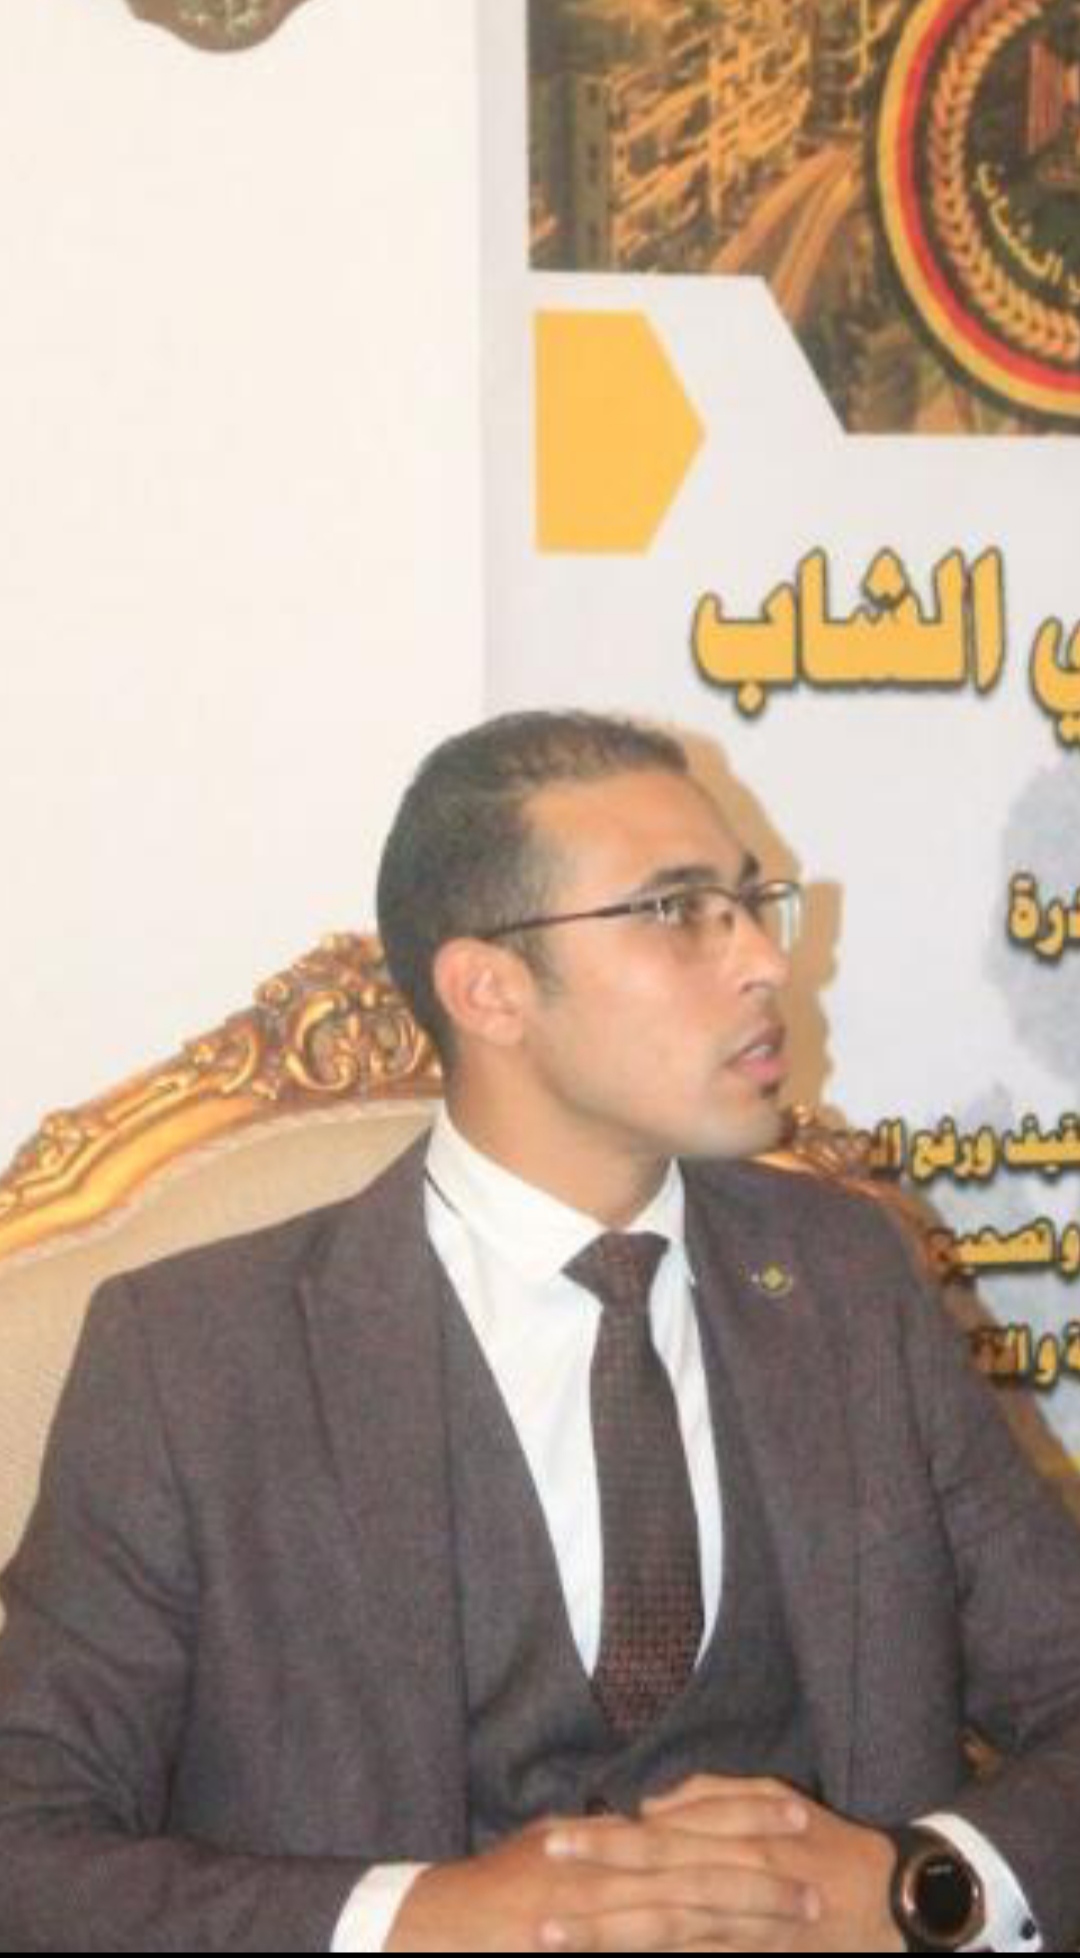 "مبادرة السياسي الشاب" بالاسكندرية تعلن دعمها للرئيس عبد الفتاح السيسي 1